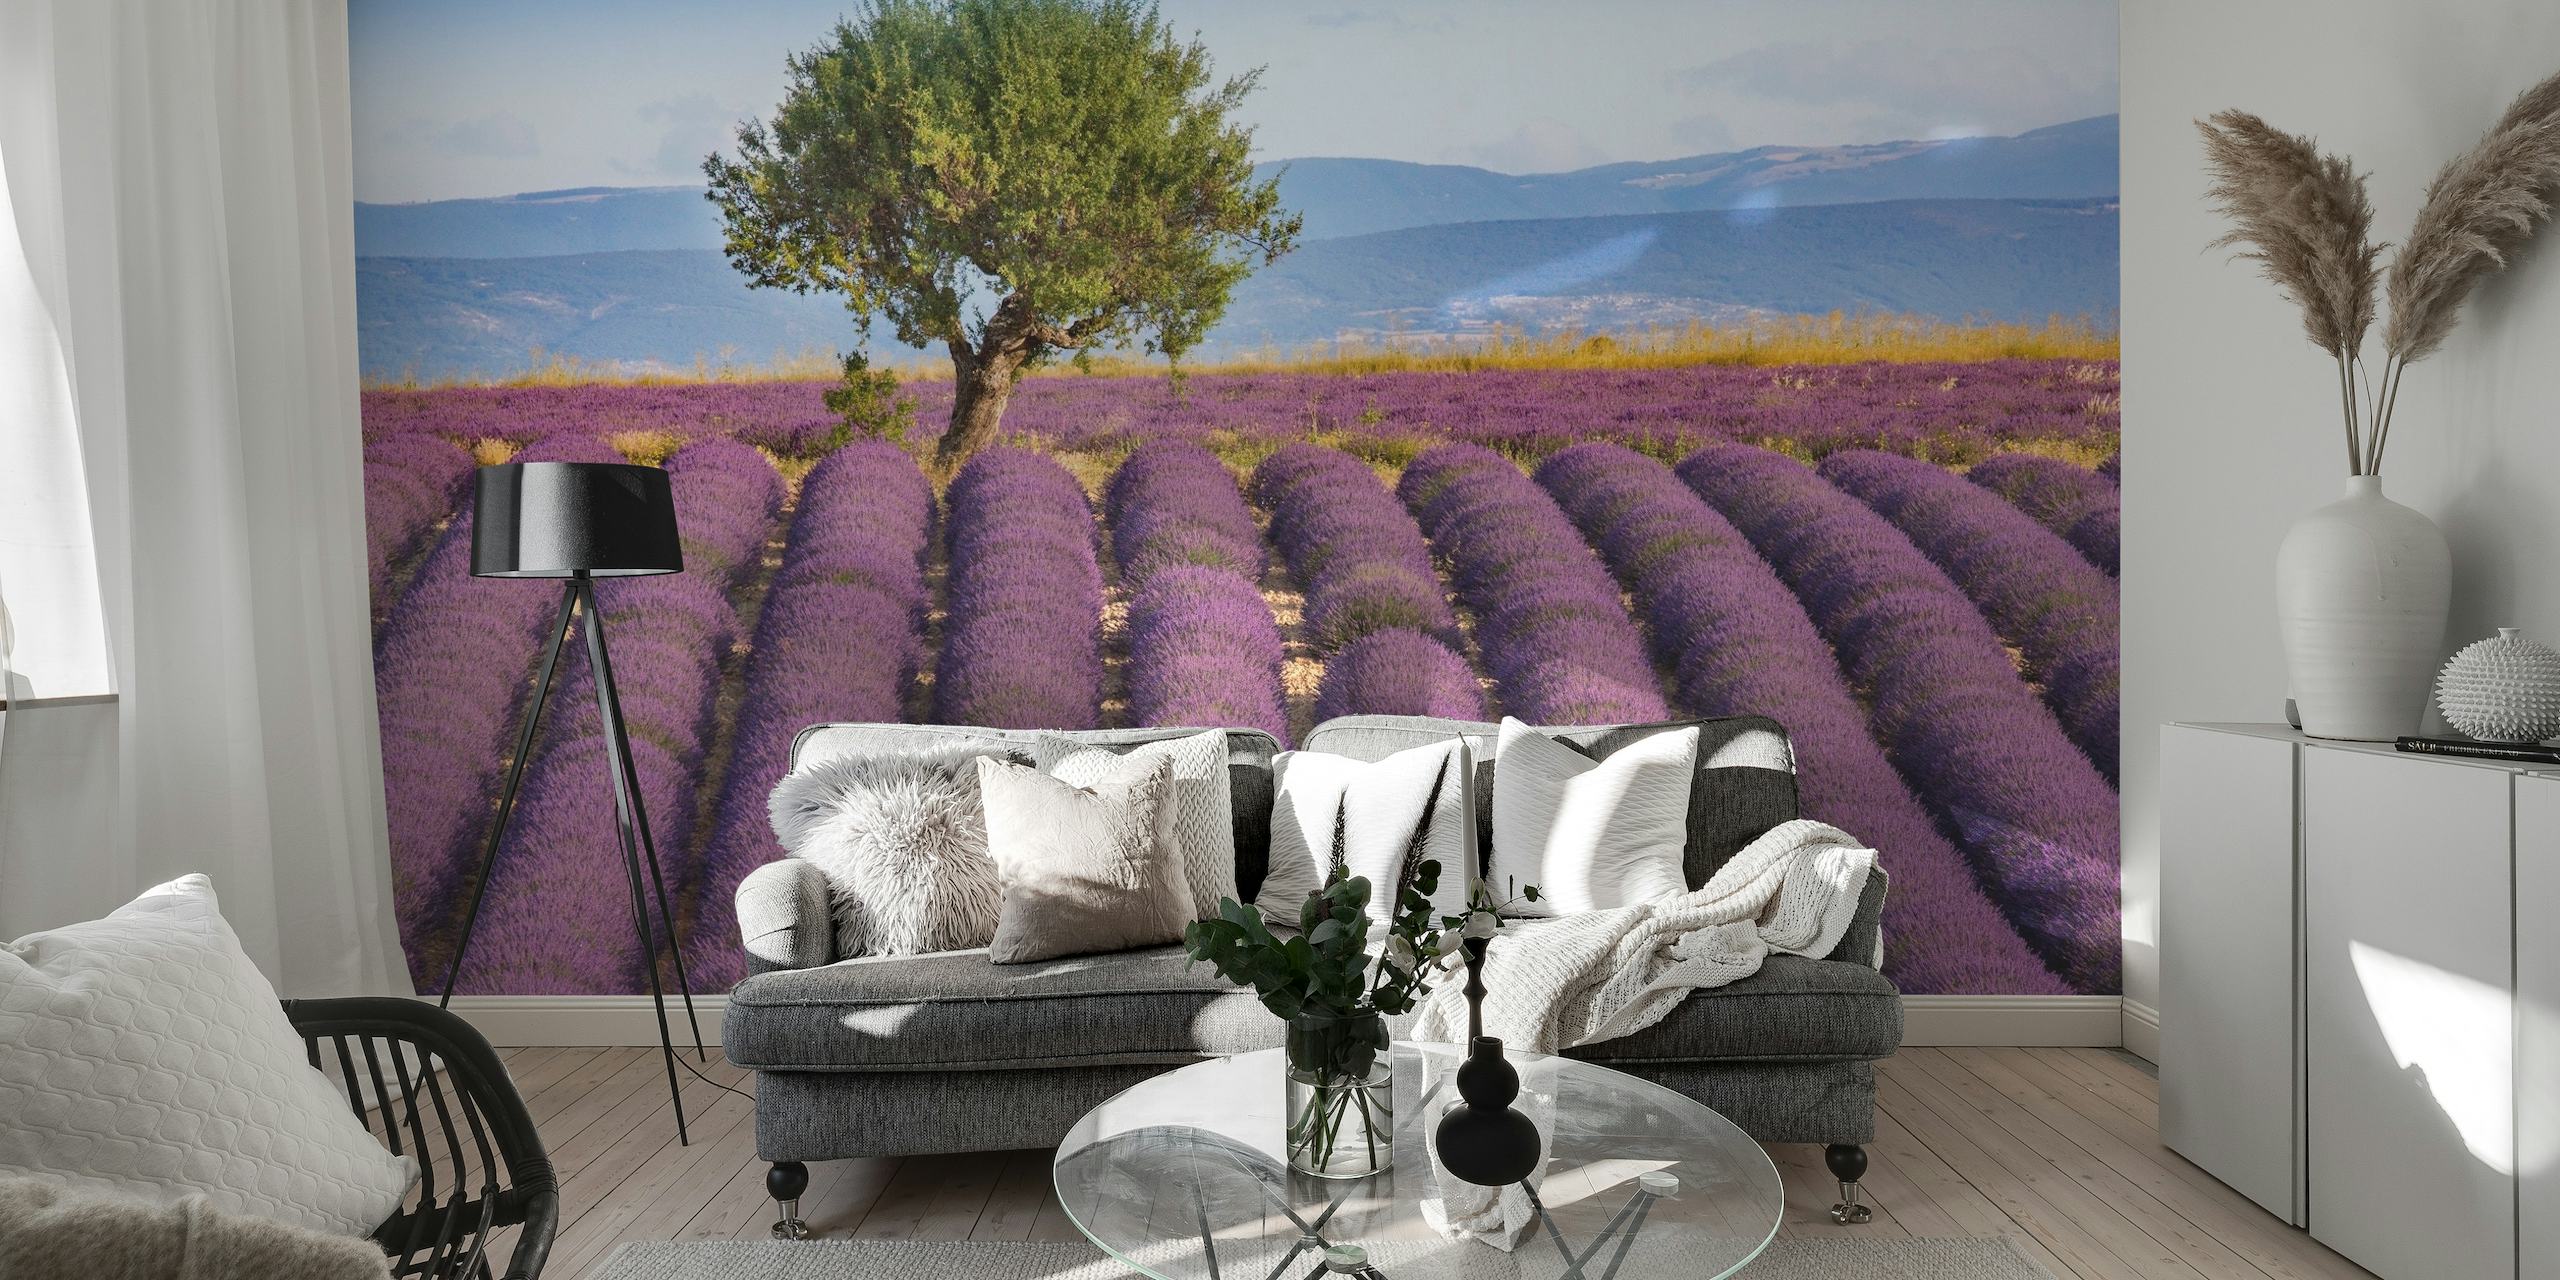 Spokojna scena Lavender Haute Provence z bogatymi fioletowymi polami pod czystym niebem